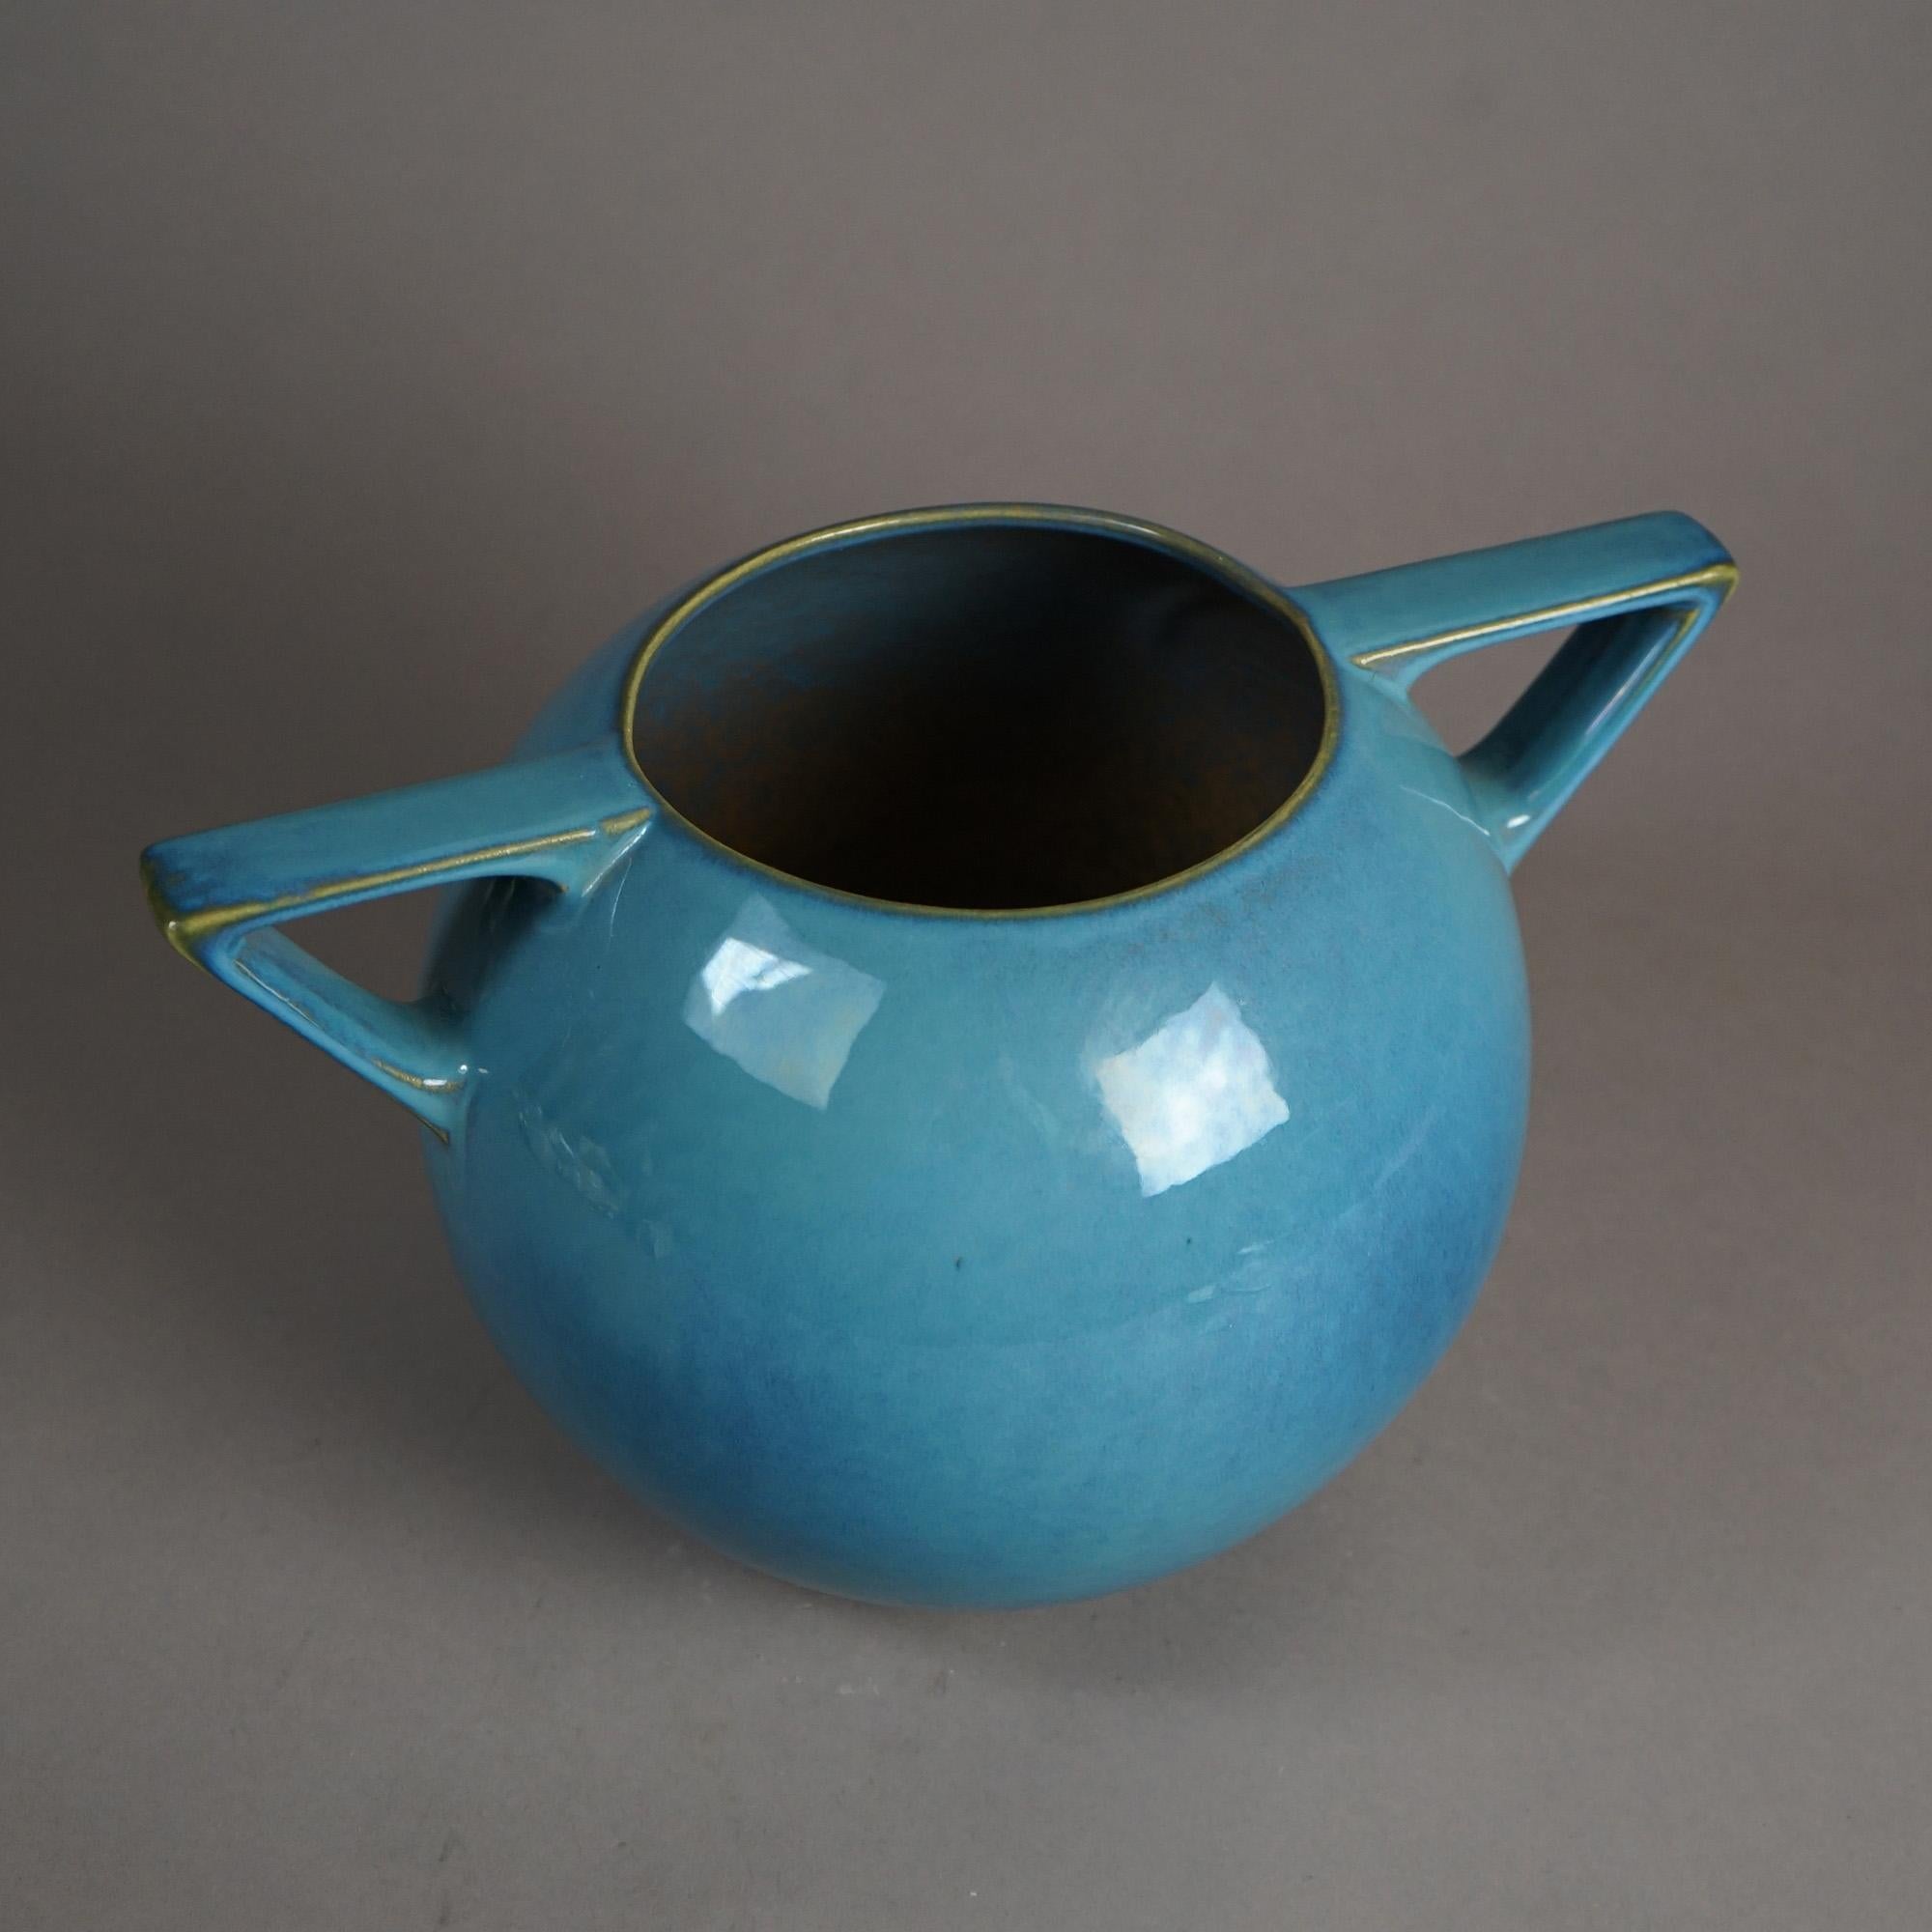 Antique Roseville Art Deco Futura Double Handle Pottery Vase C1930.

Measures- 8''H x 13.5''W x 9''D